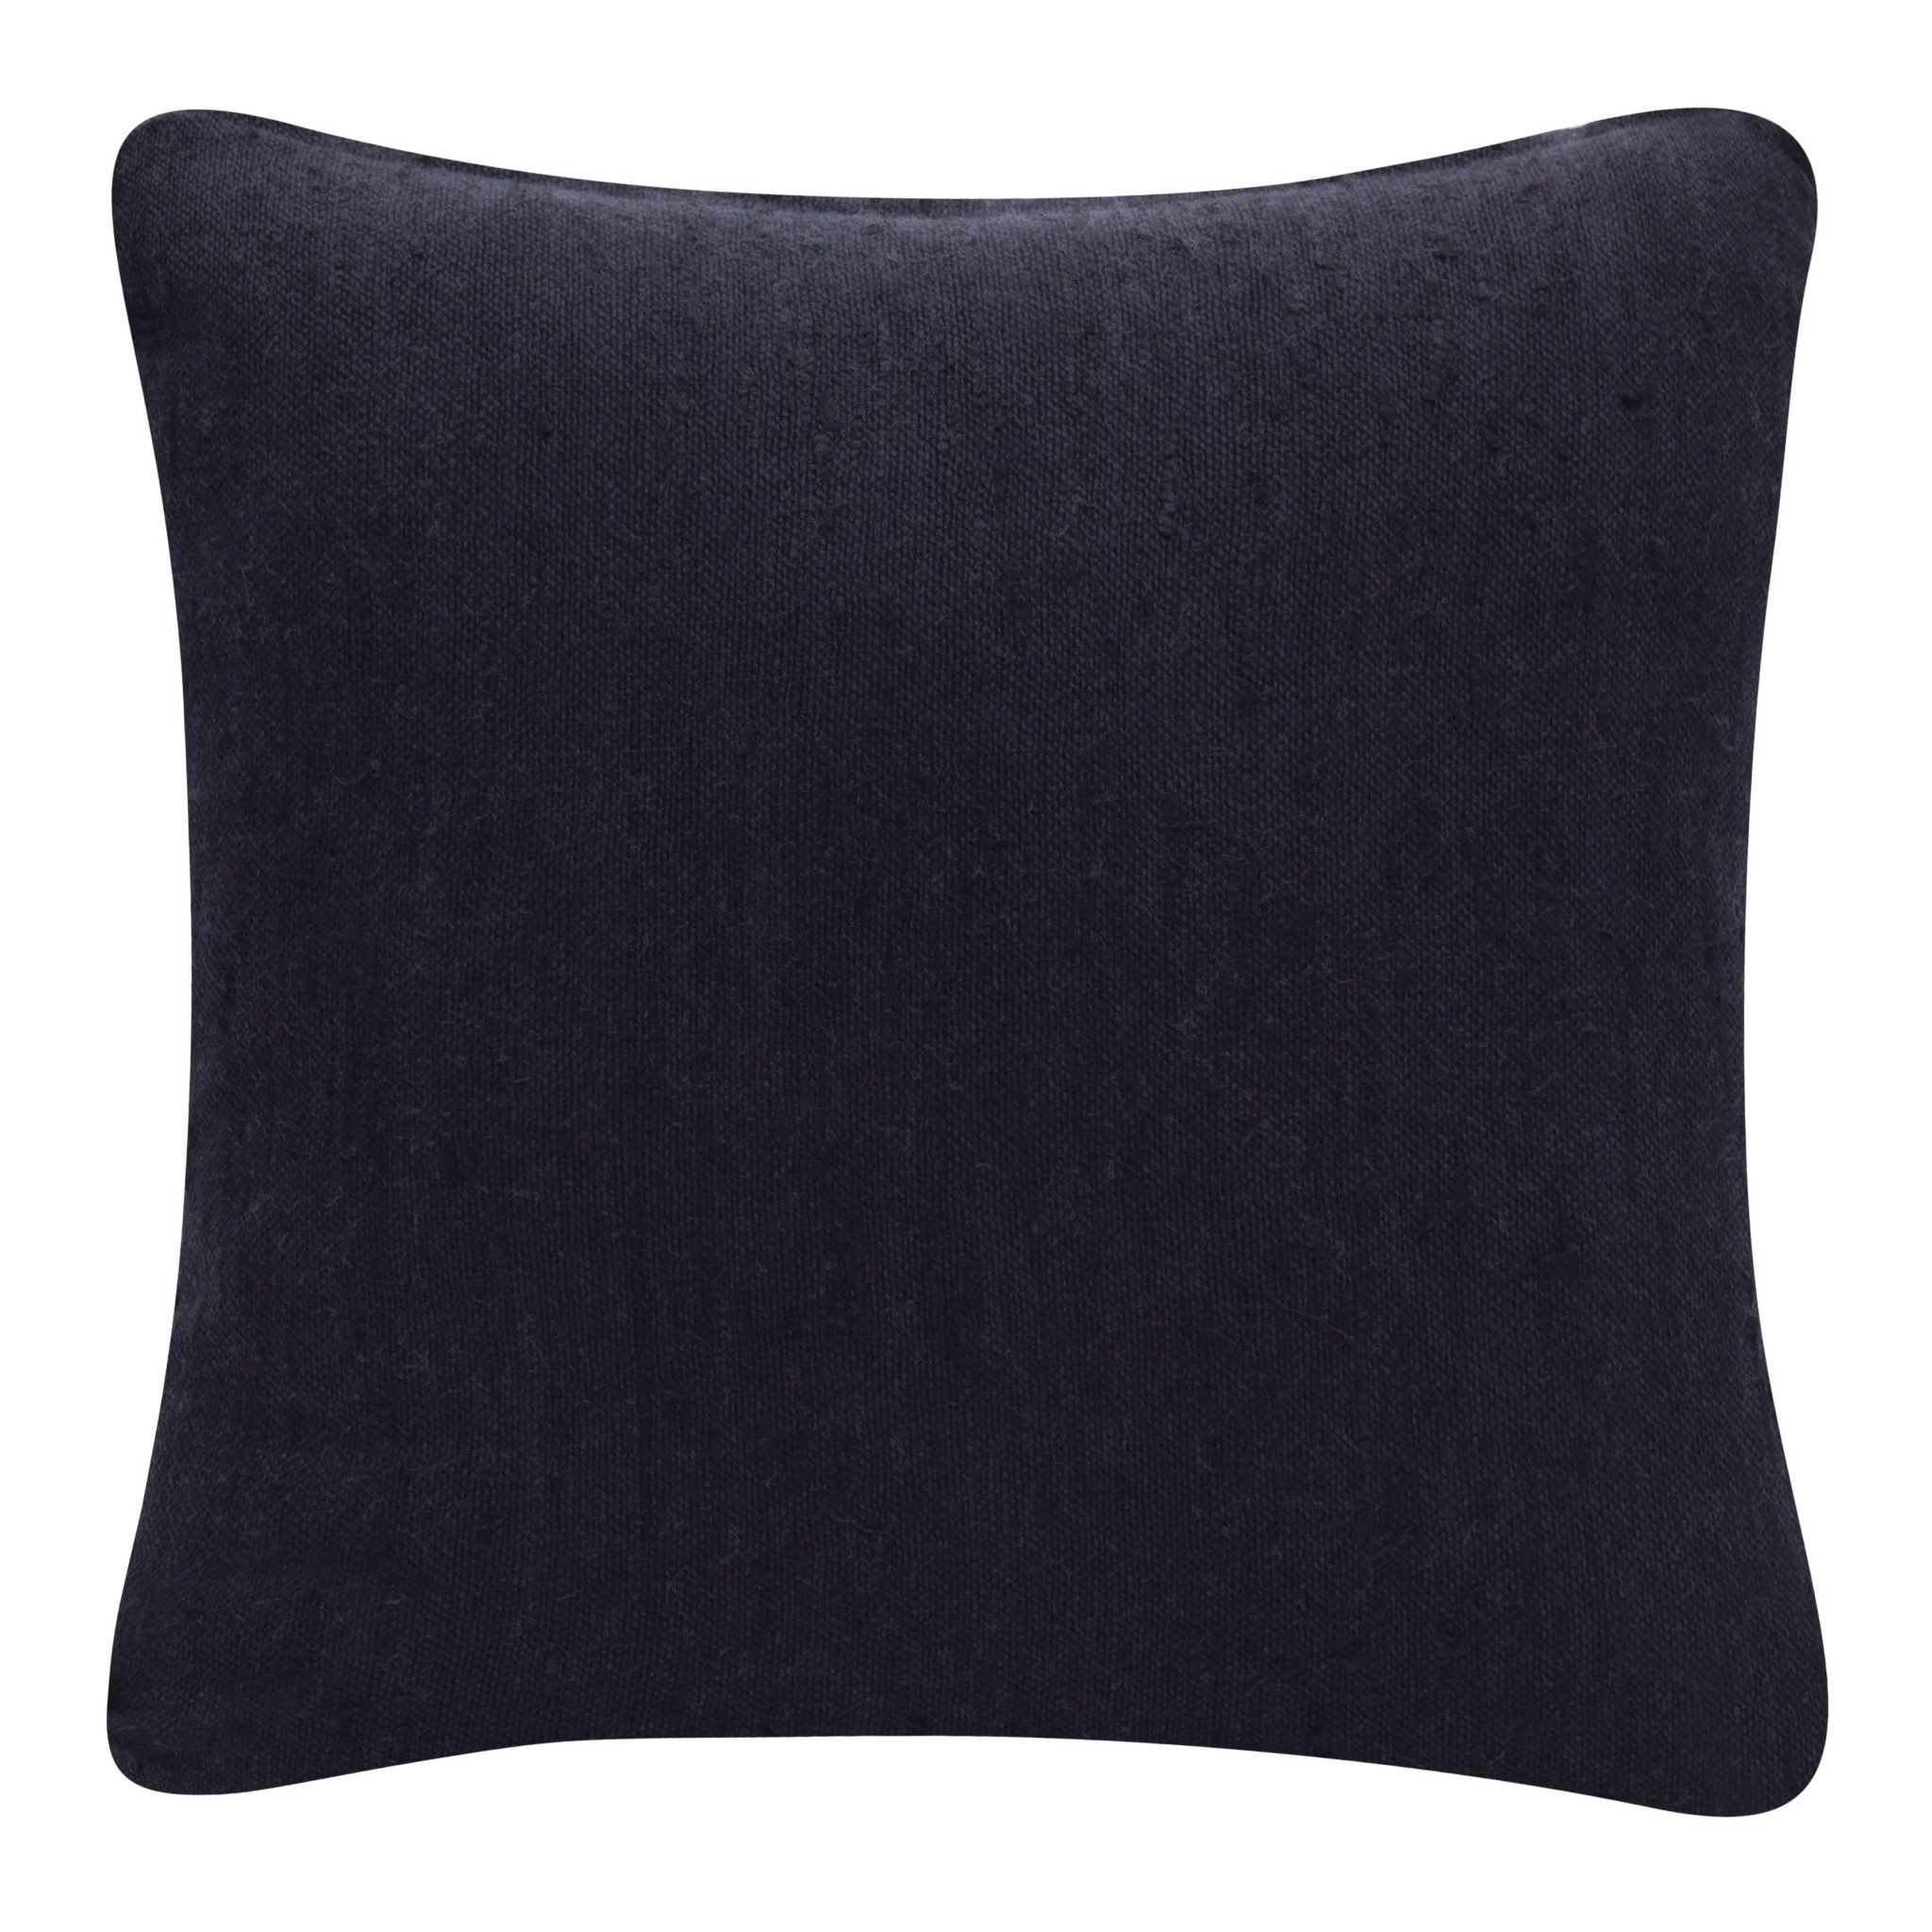 20" X 20" Black Linen Zippered Pillow-517058-1